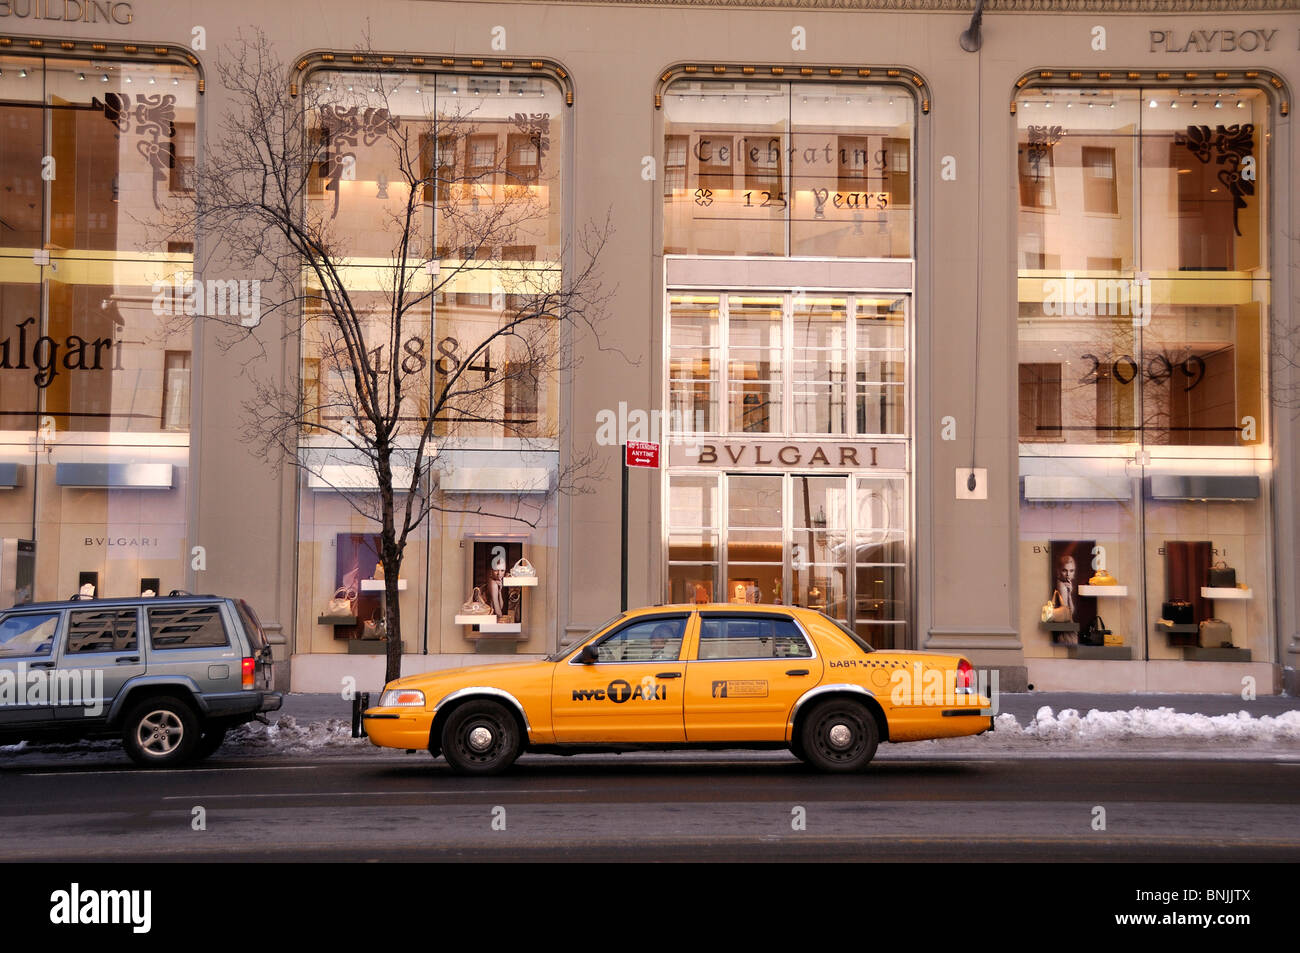 BVLGARI Bulgari 57th Street della Quinta Avenue Midtown Manhattan New York STATI UNITI D'AMERICA taxi. Giallo shopping city viaggio urbano americano Foto Stock